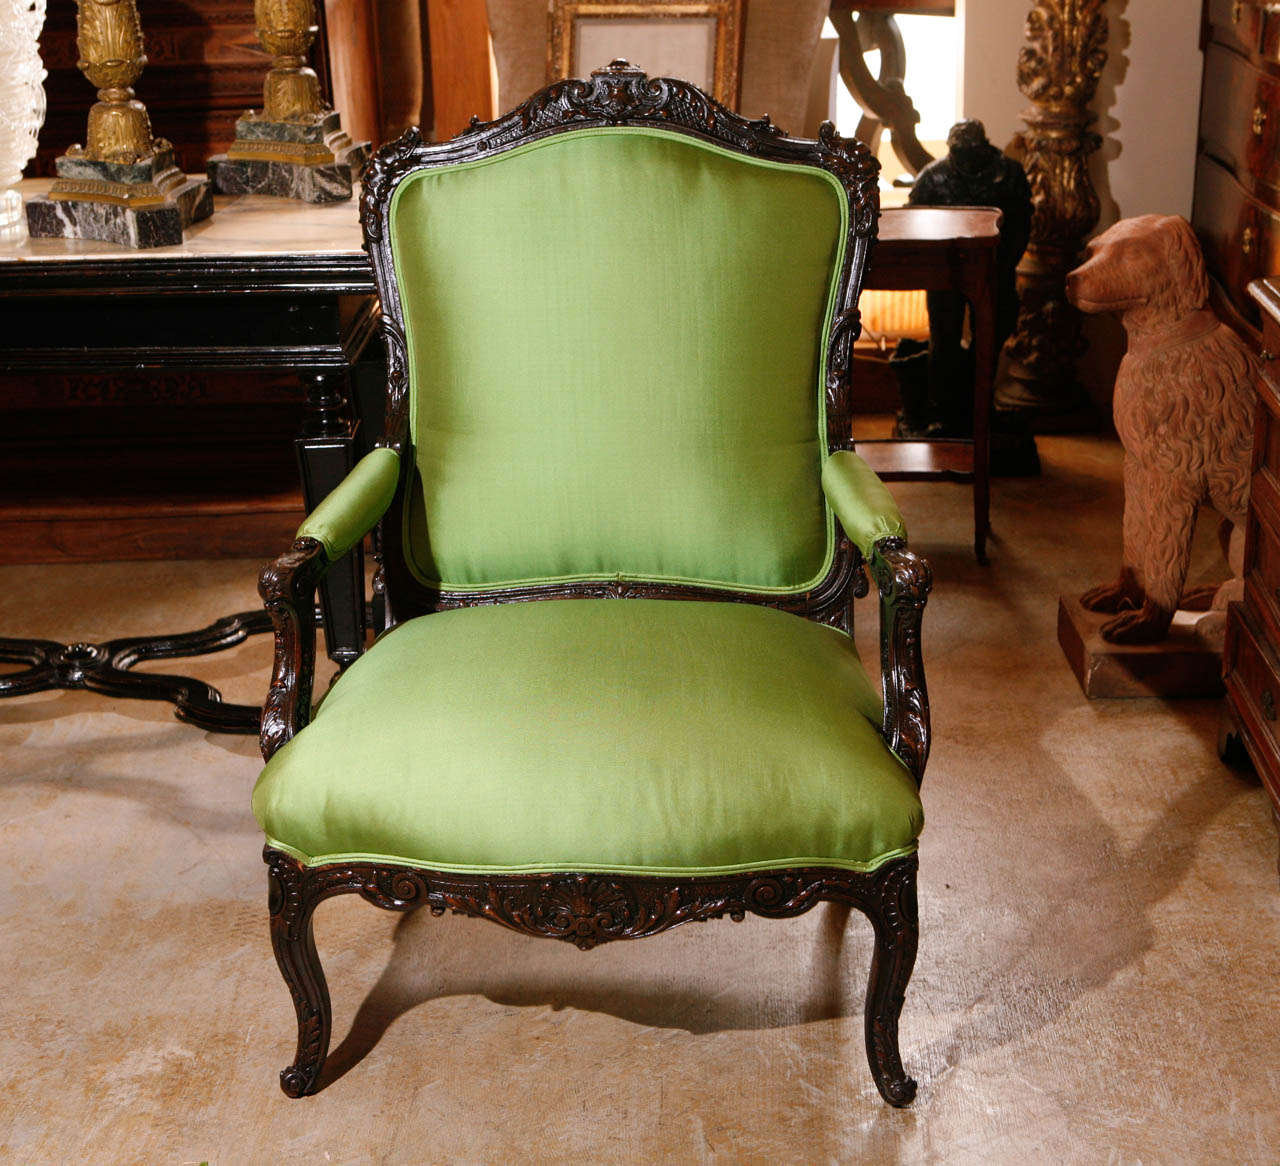 Paire de fauteuils richement sculptés à la main avec des visages et des détails feuillagés. Recouvert d'un tissu Coraggio vert pomme.